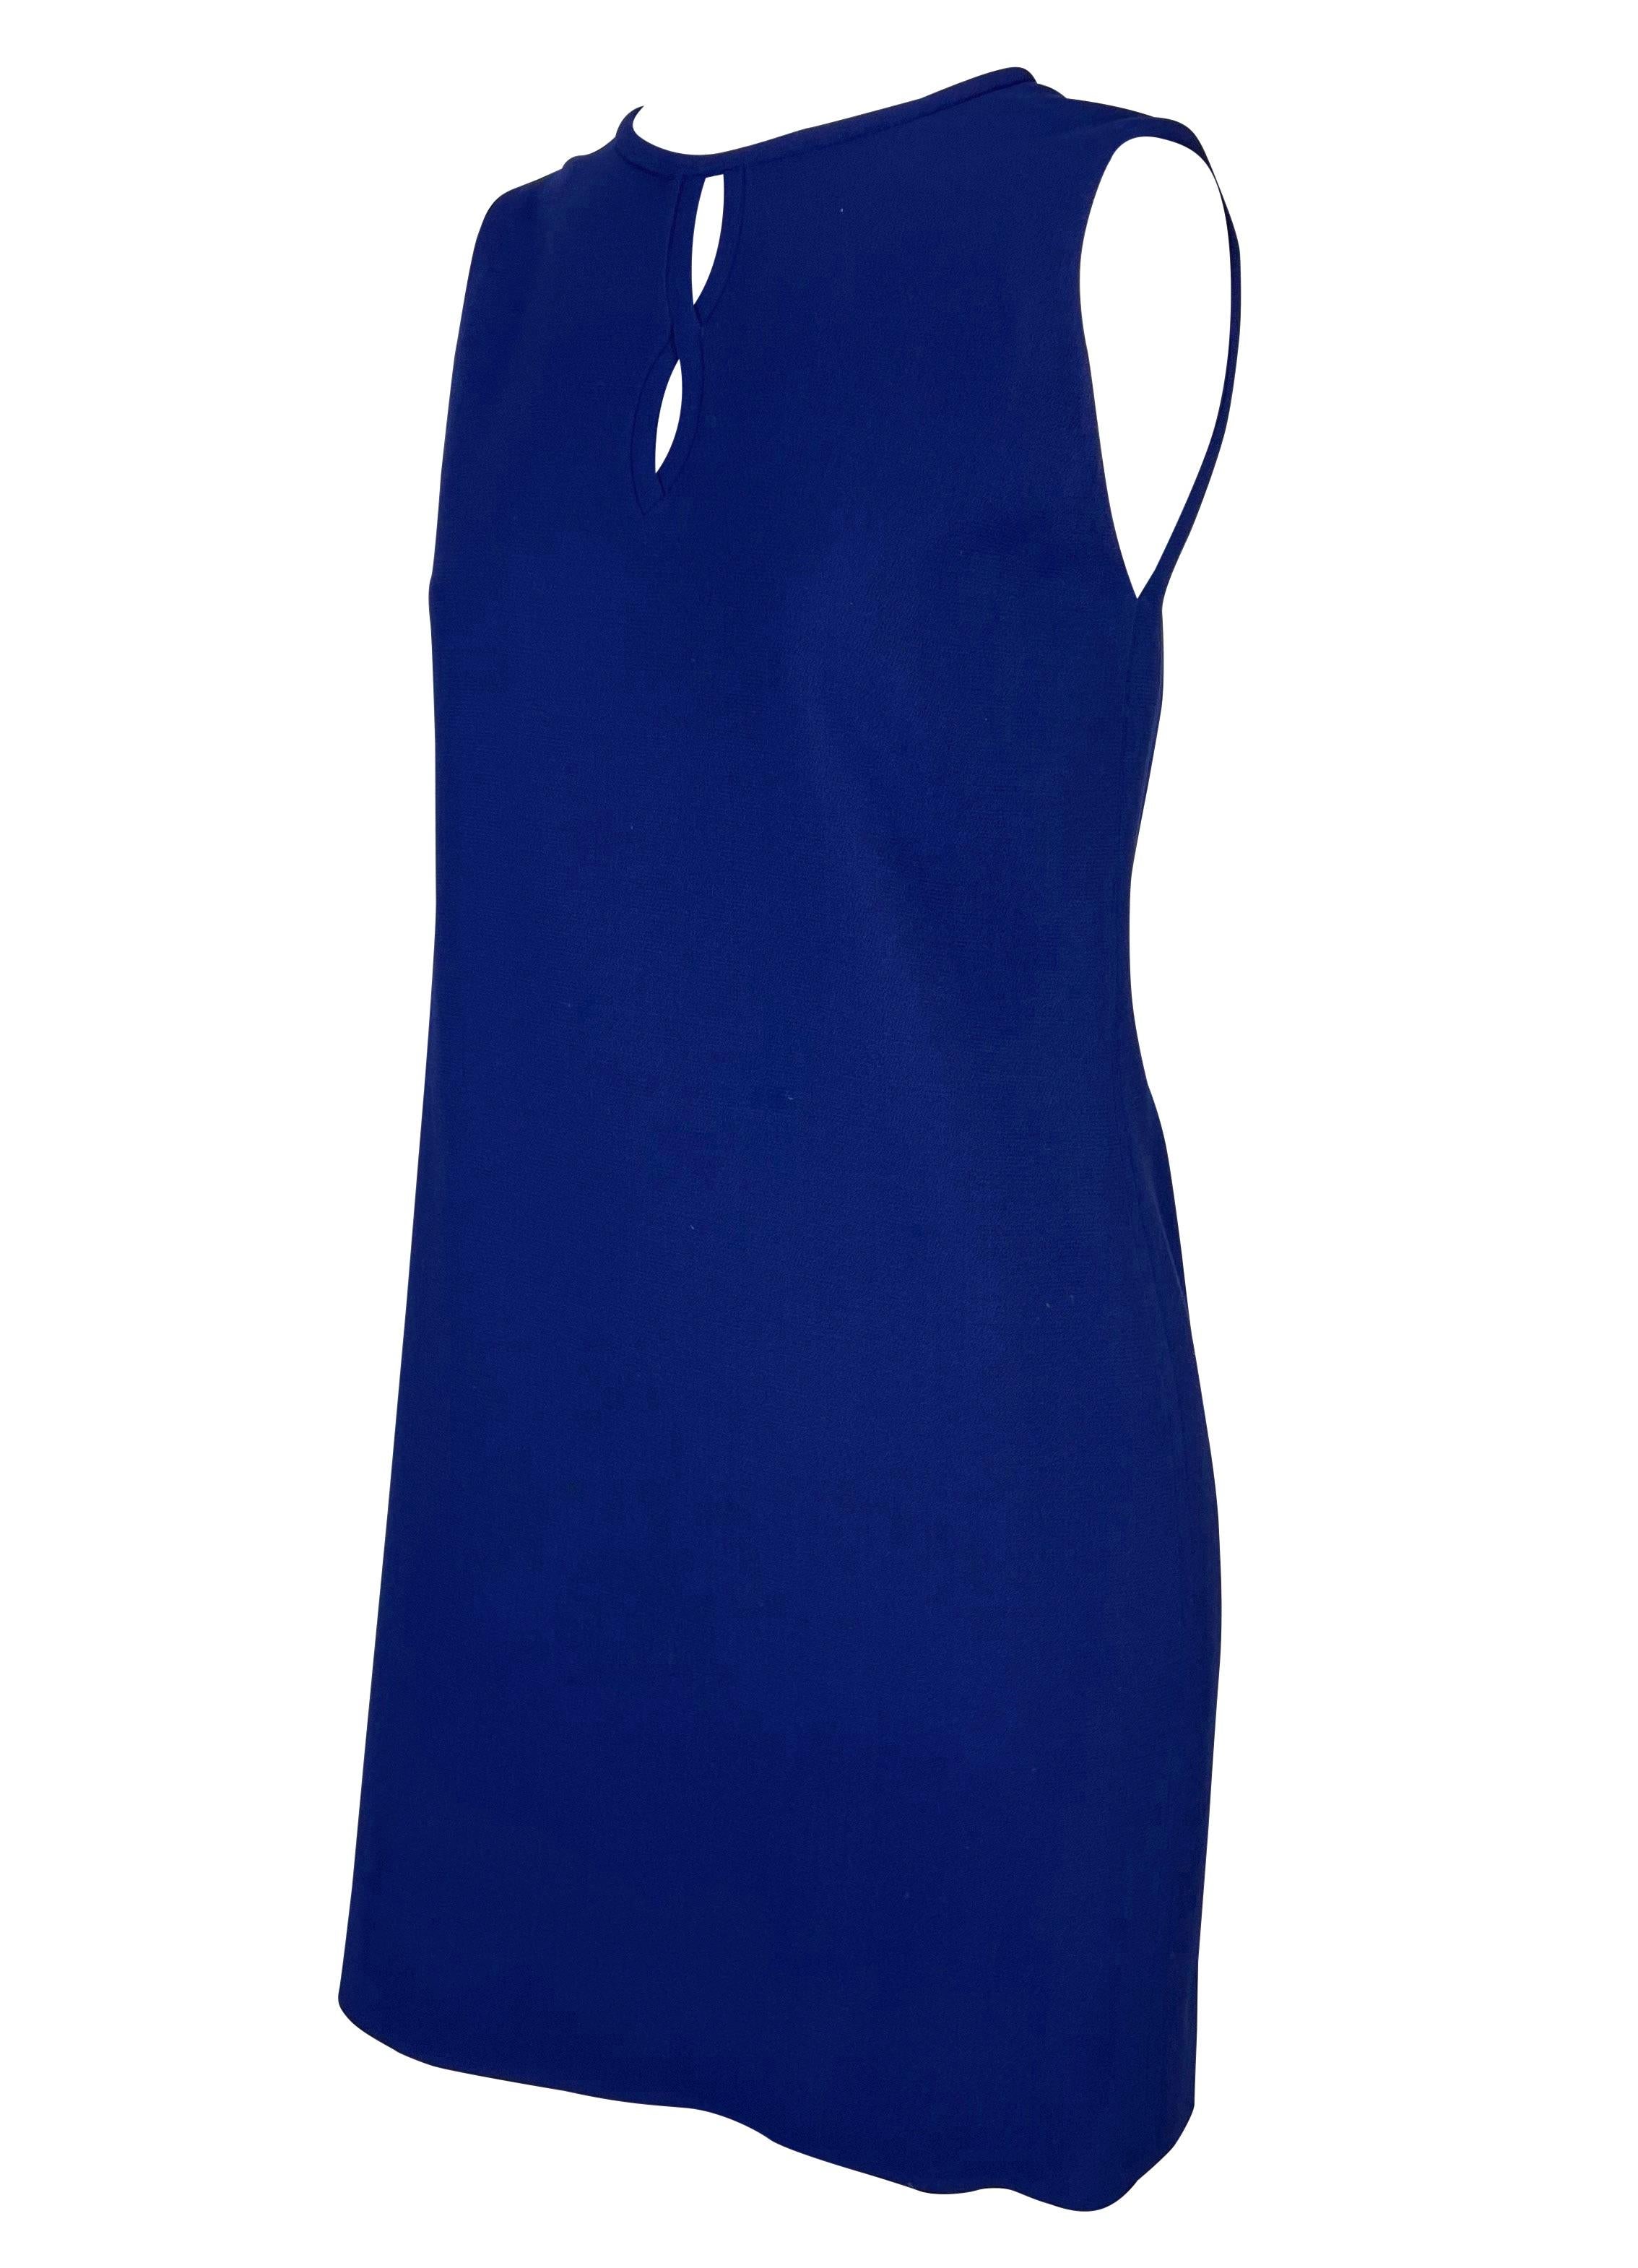 Nous vous présentons une fabuleuse robe bleu royal Gianni Versace Couture conçue par Gianni Versace. Issue de la collection Automne/Hiver 1997, cette magnifique robe en laine stretch sans manches est agrémentée d'une découpe en trou de serrure au